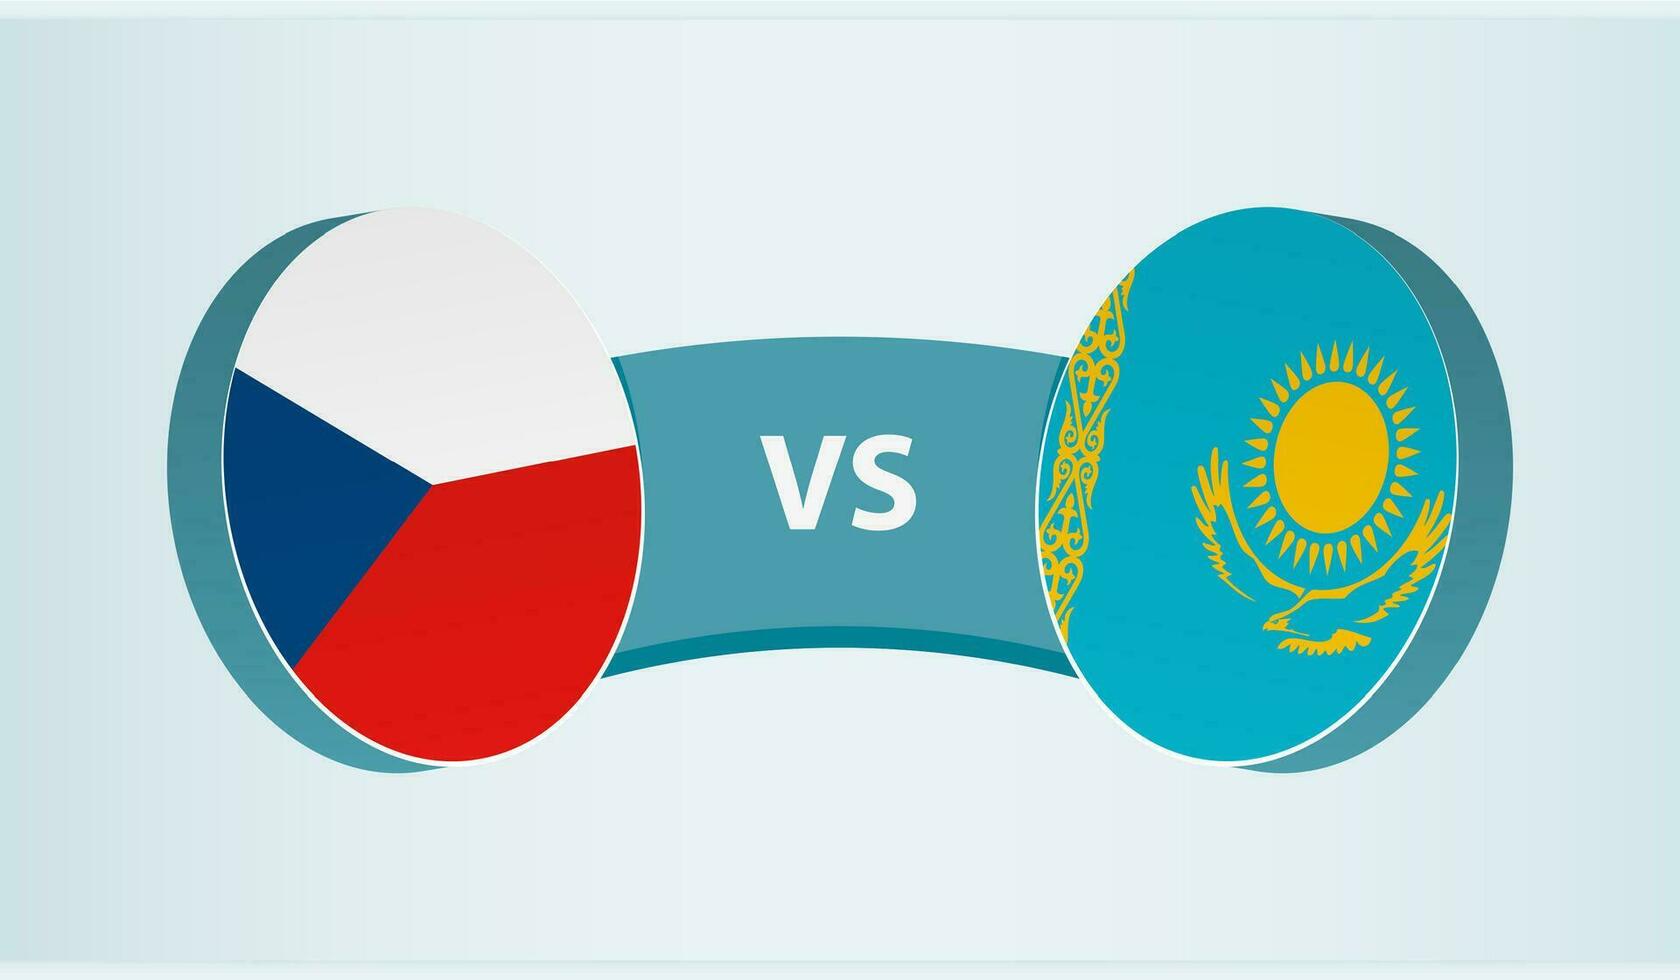 tcheco república versus Cazaquistão, equipe Esportes concorrência conceito. vetor